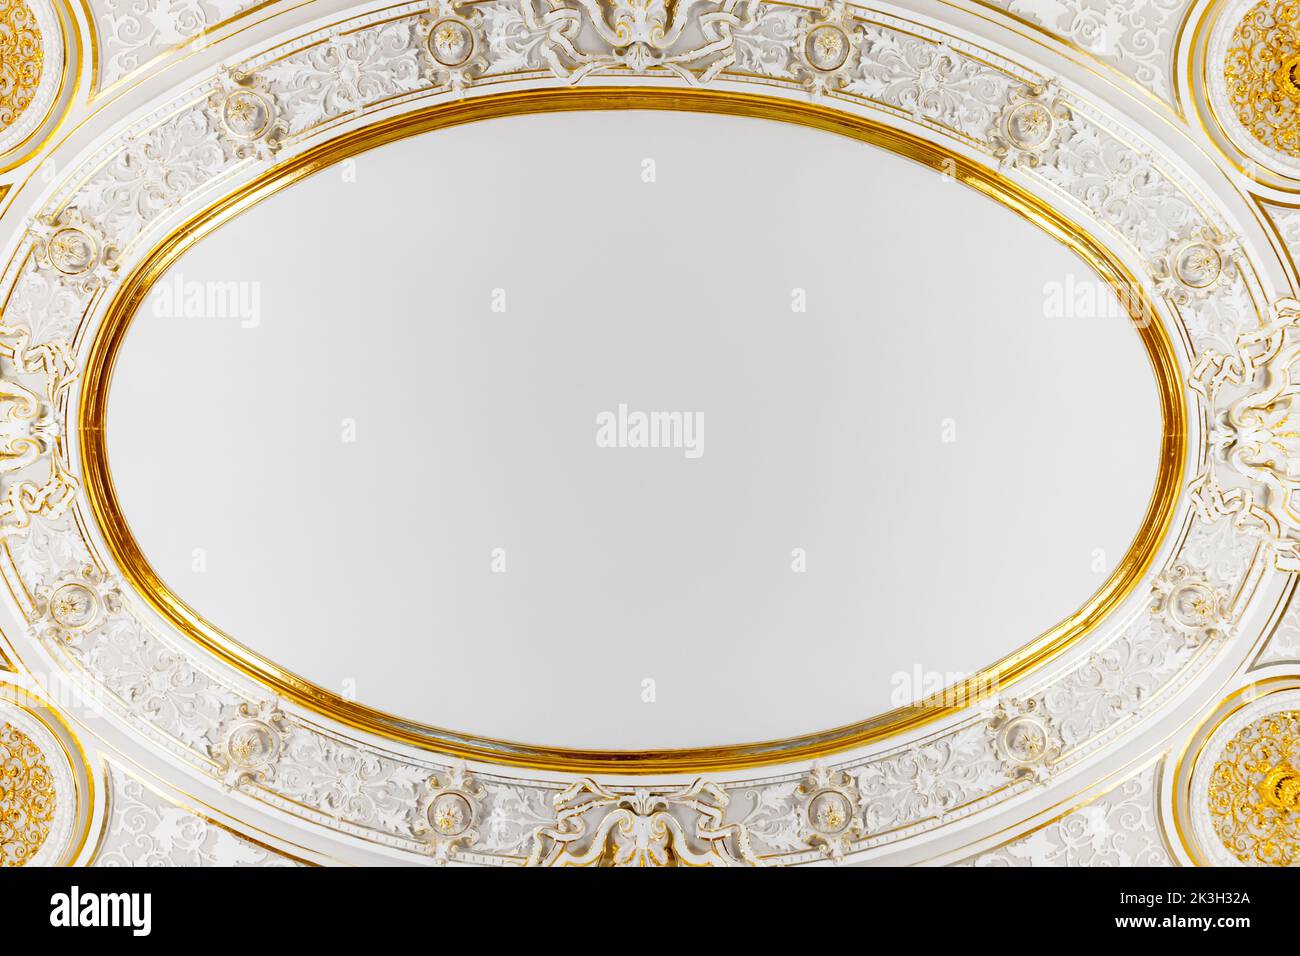 Detalles interiores clásicos de lujo, decoración del techo con marco redondo y detalles dorados Foto de stock